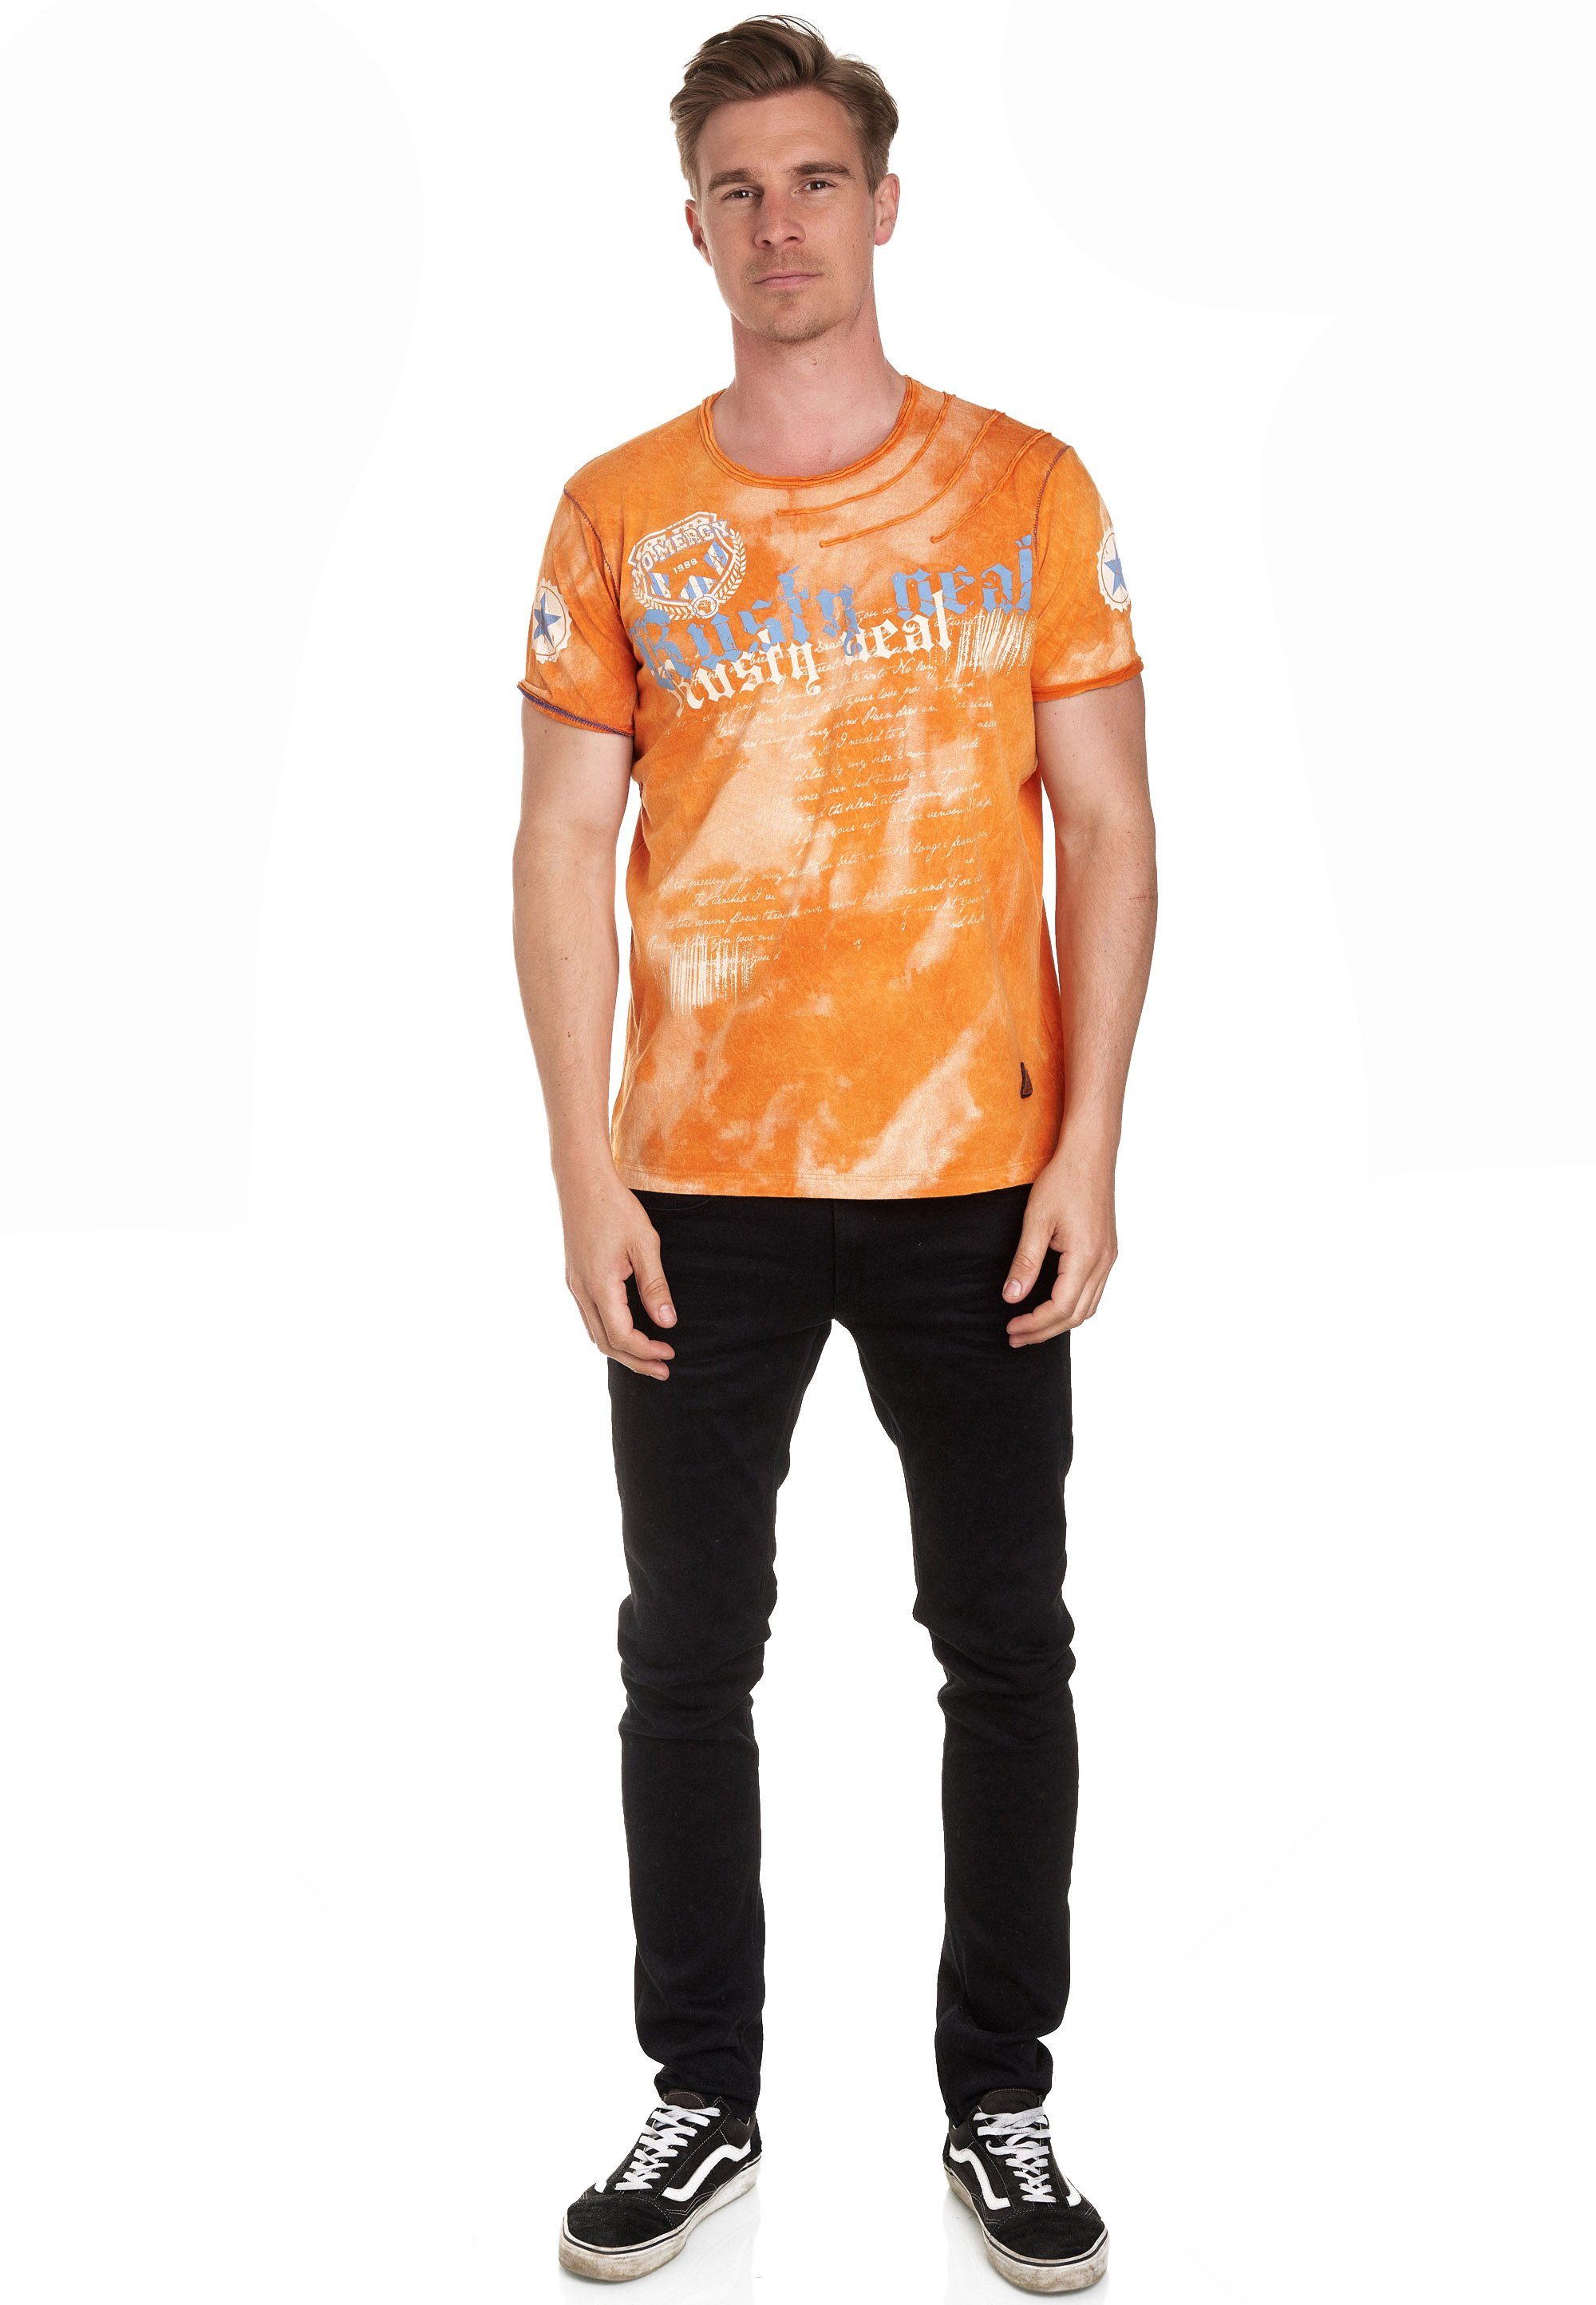 Rusty Neal T-Shirt orange toller Batik-Optik mit